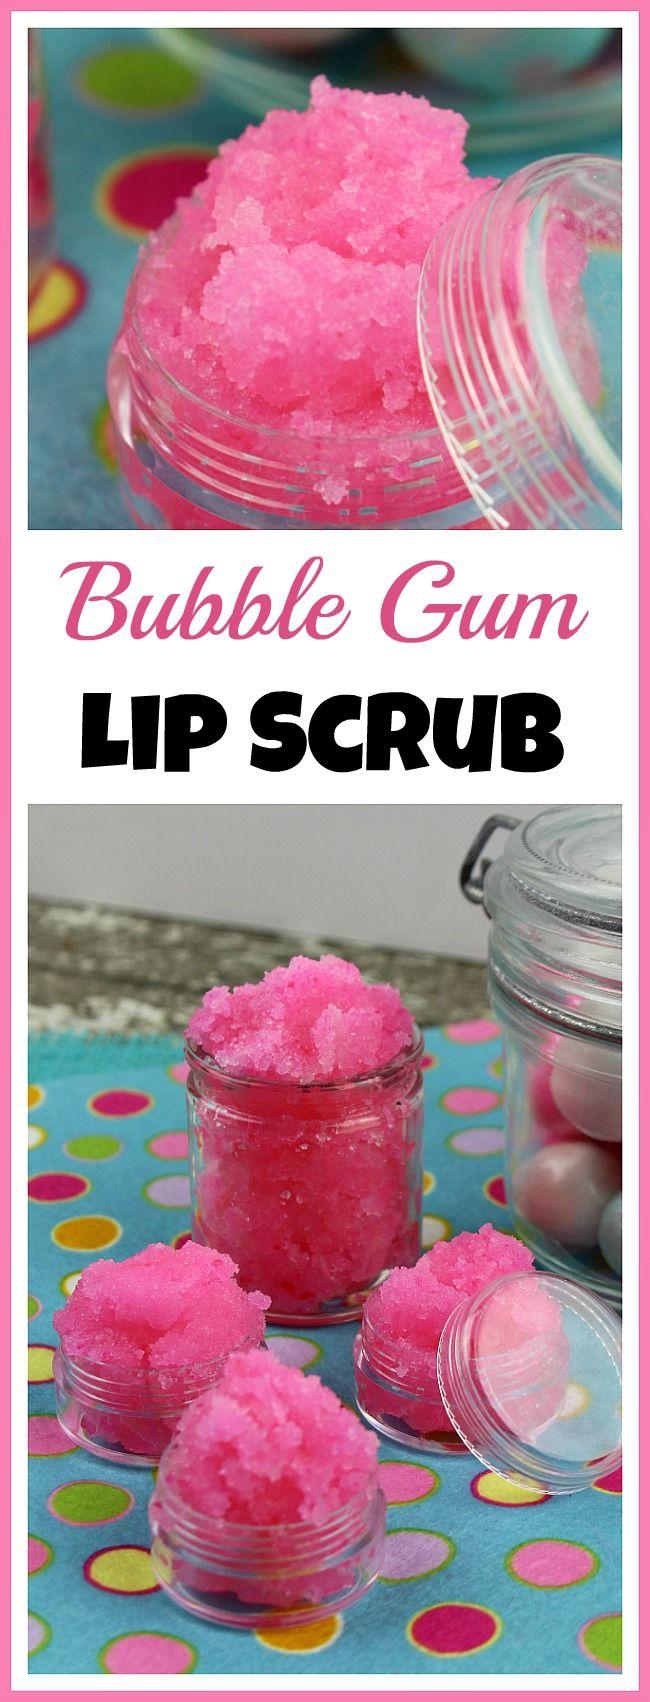 Wedding - DIY Bubble Gum Lip Scrub